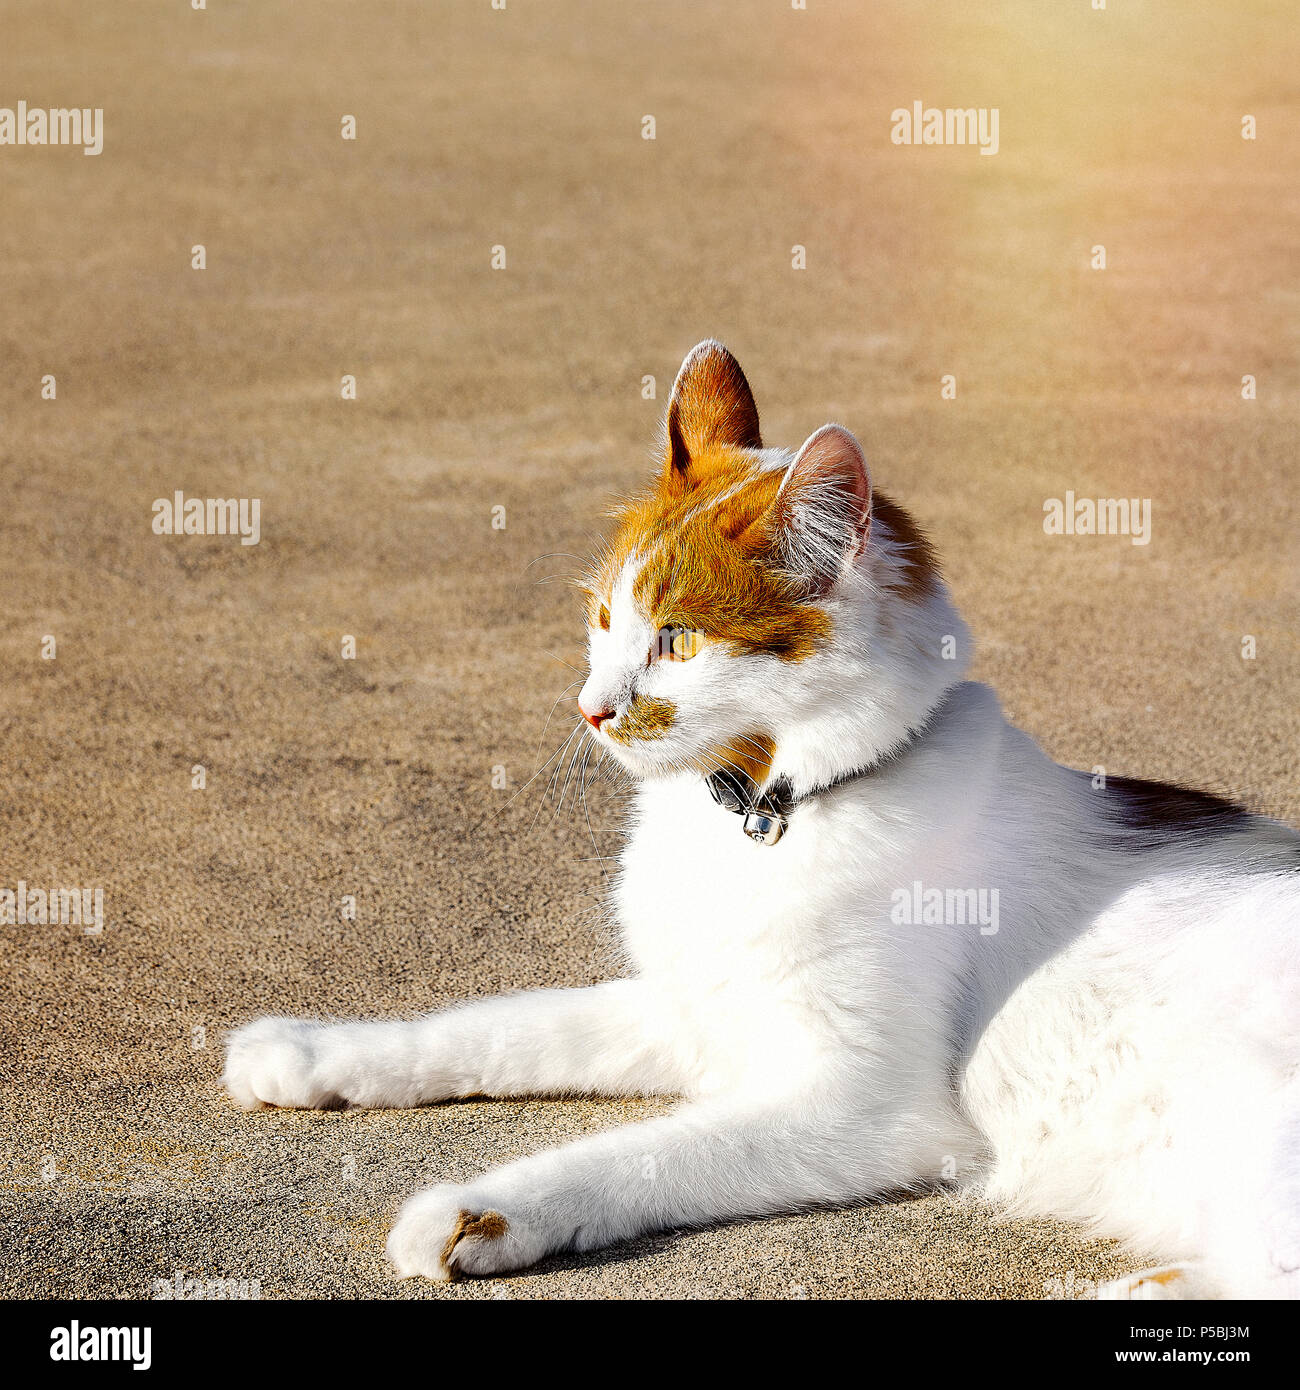 Kitty Cat rilassarsi sdraiati su un golden superficie ghiaioso cercando. Immagine di stock. Foto Stock